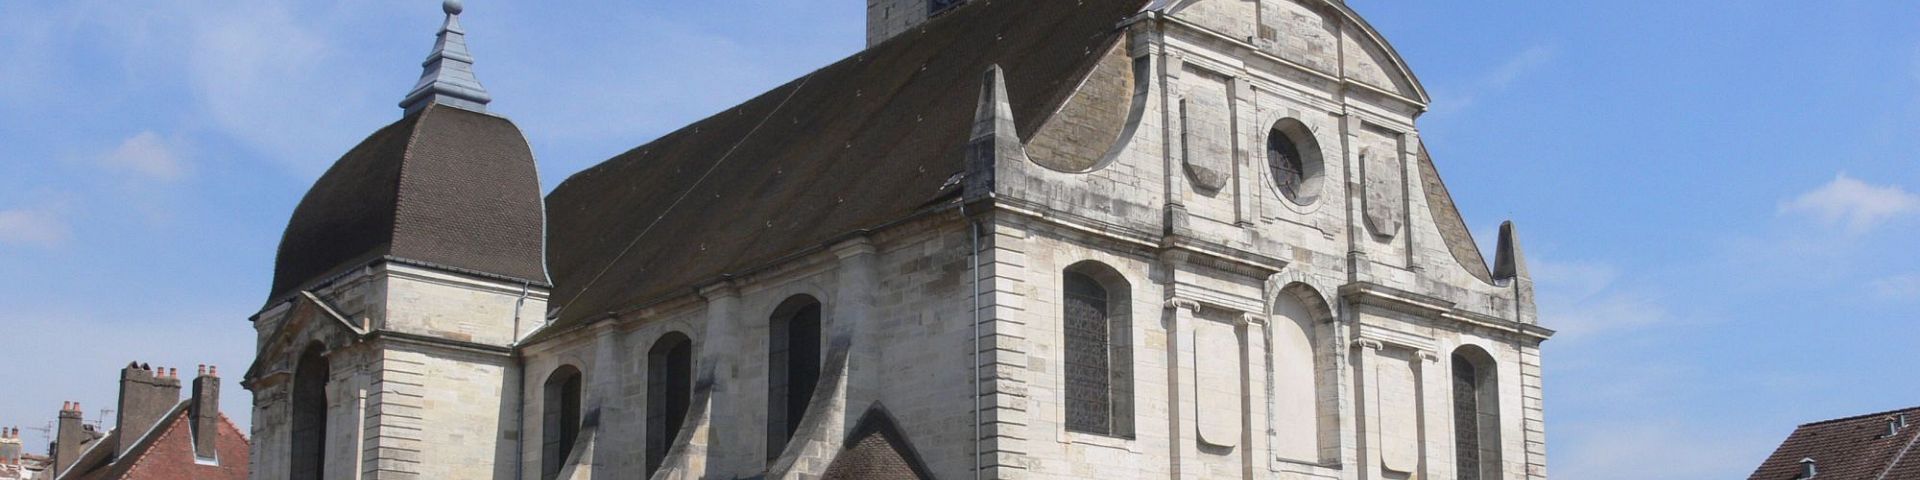 Vesoul - Eglise St-Georges (70)